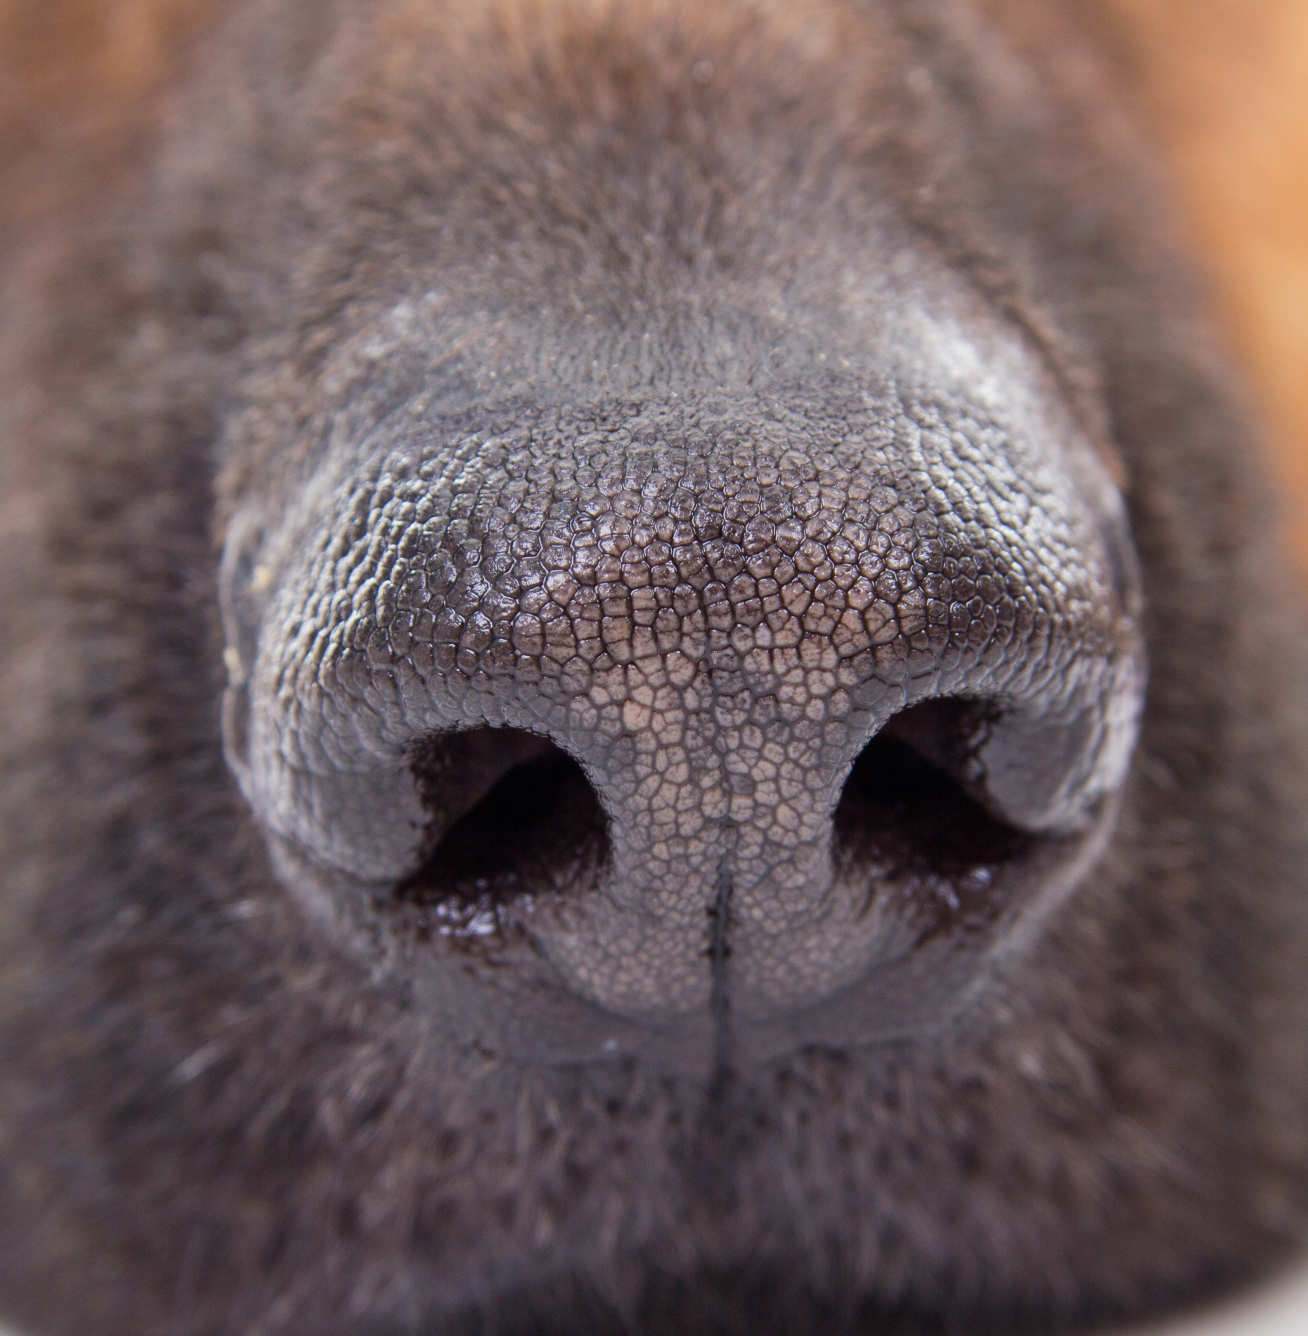 Close up of dog nose